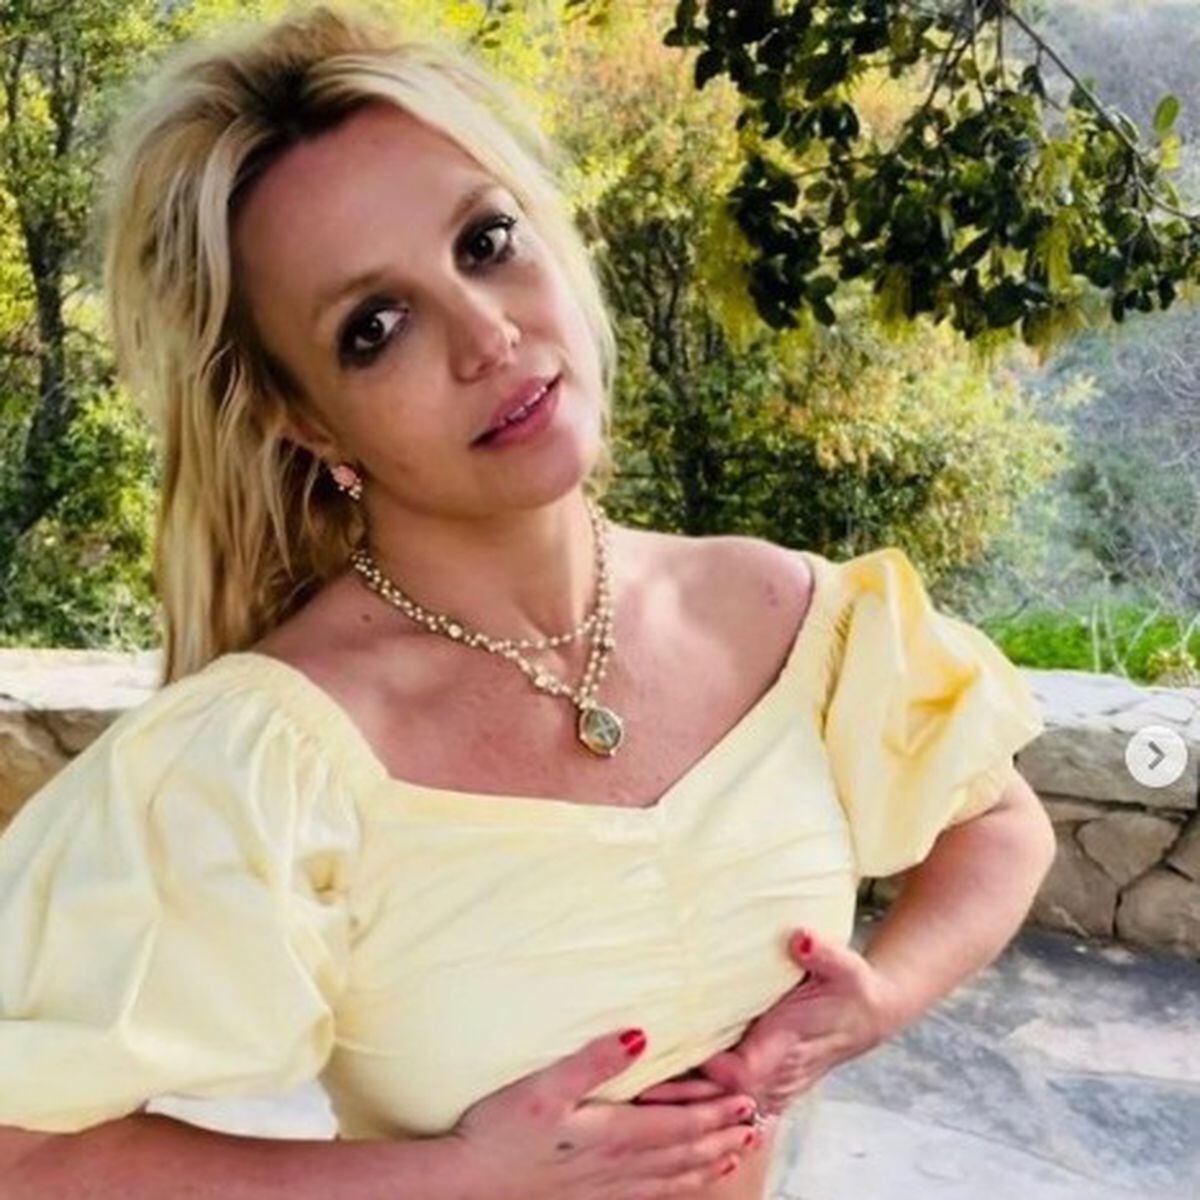 Mãe de Britney Spears rebate acusação feita pela cantora em autobiografia